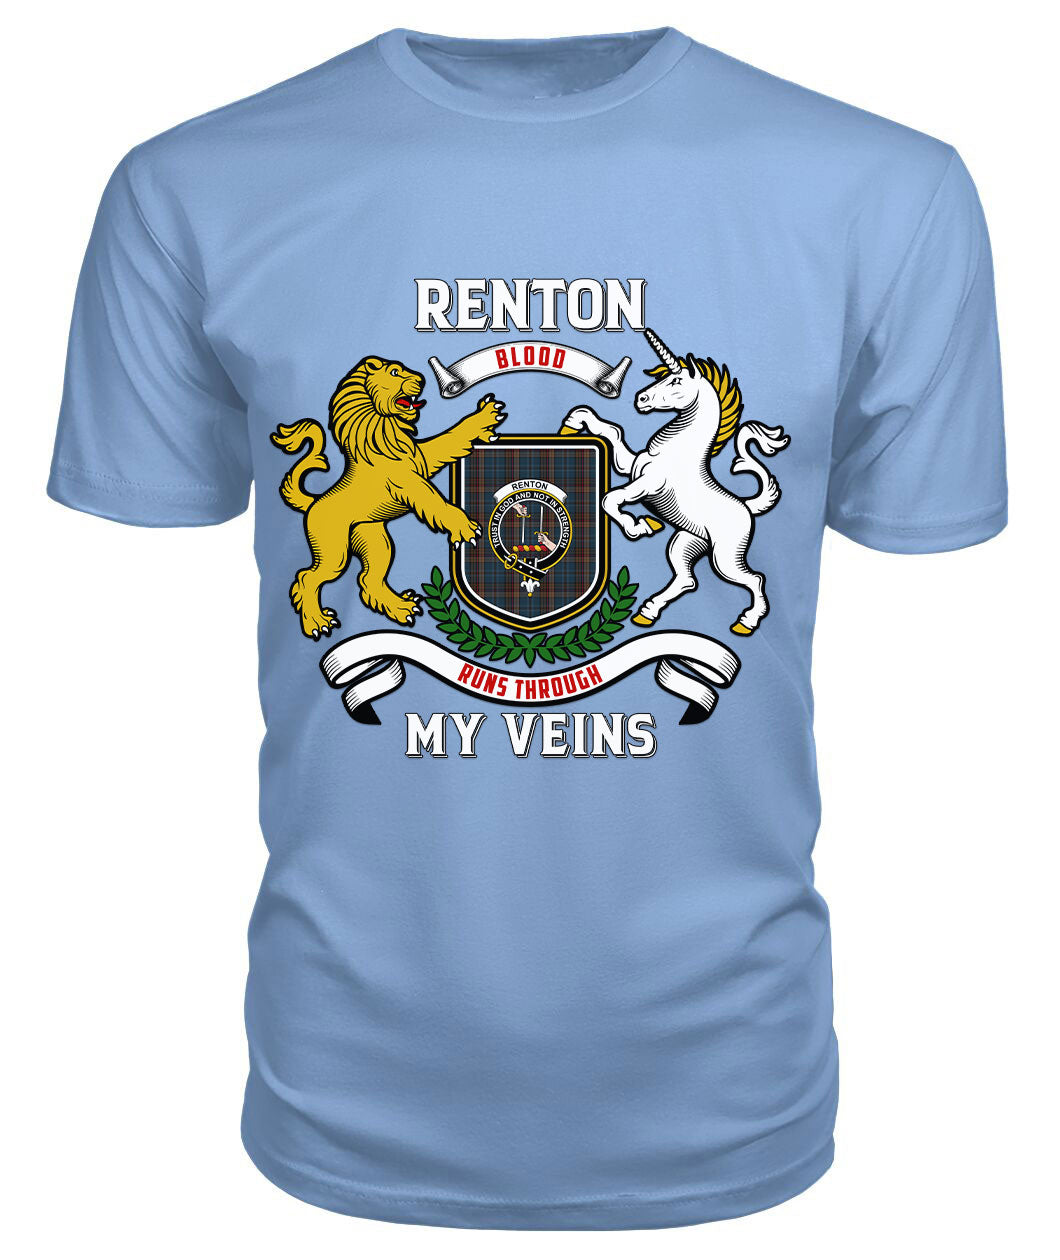 Renton Tartan Crest 2D T-shirt - Blood Runs Through My Veins Style